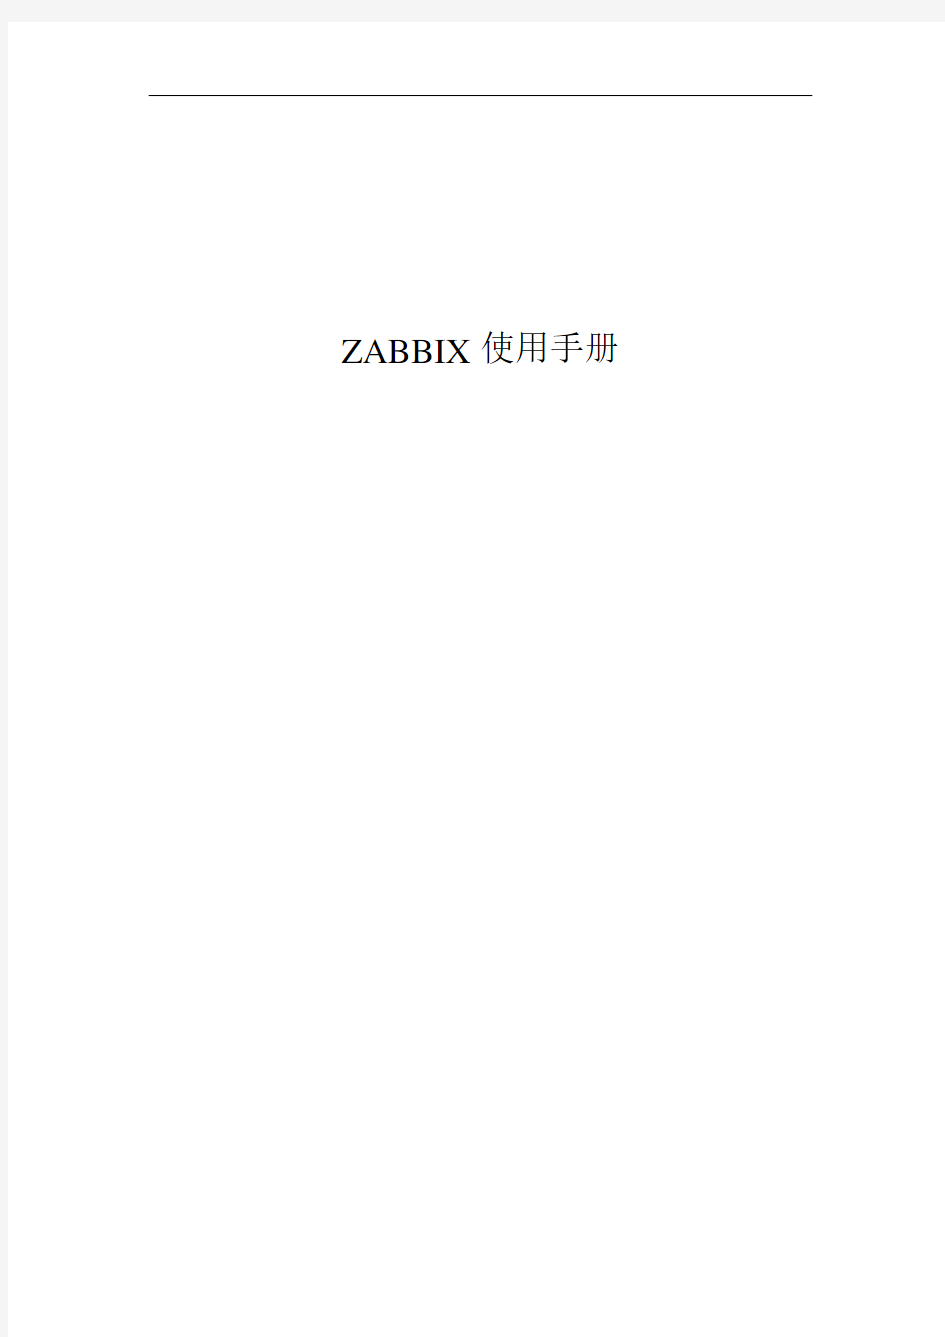 ZABBIX使用手册